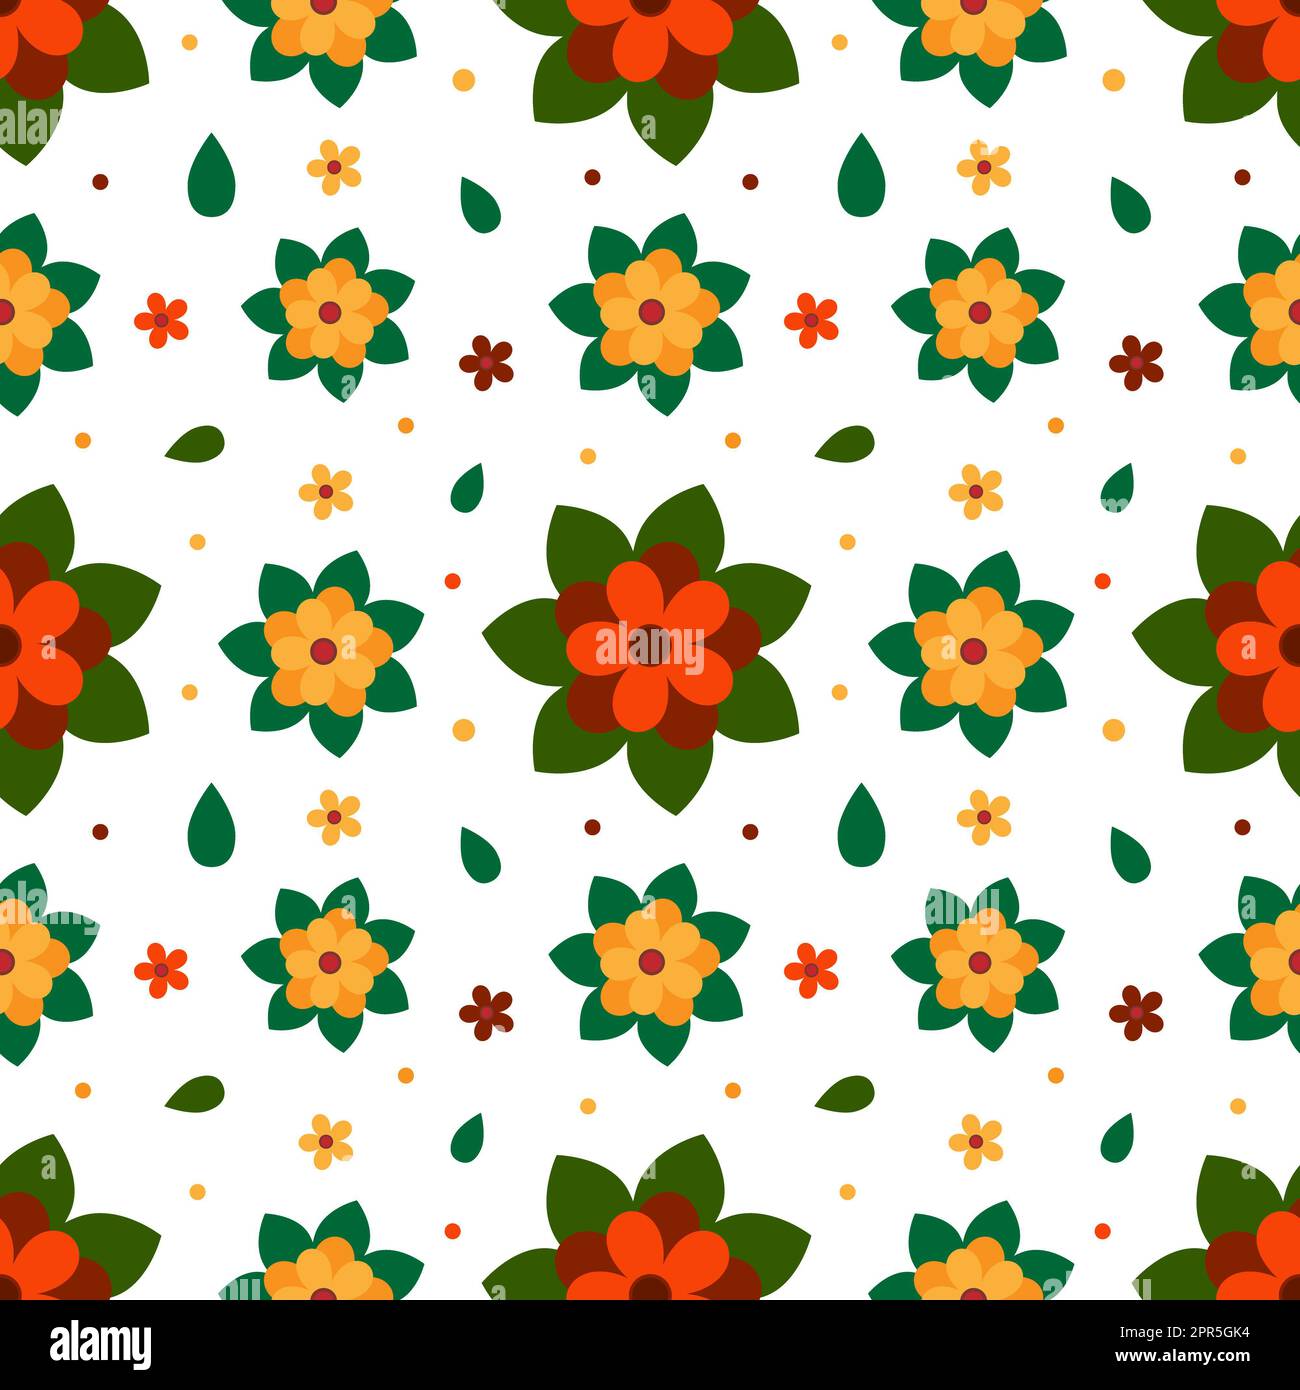 Nahtloses Blumenmuster, nahtloser Blumenmuster auf dem Hintergrund. Dieses Muster hat orangefarbene Blumen mit grünen Blättern Stockfoto